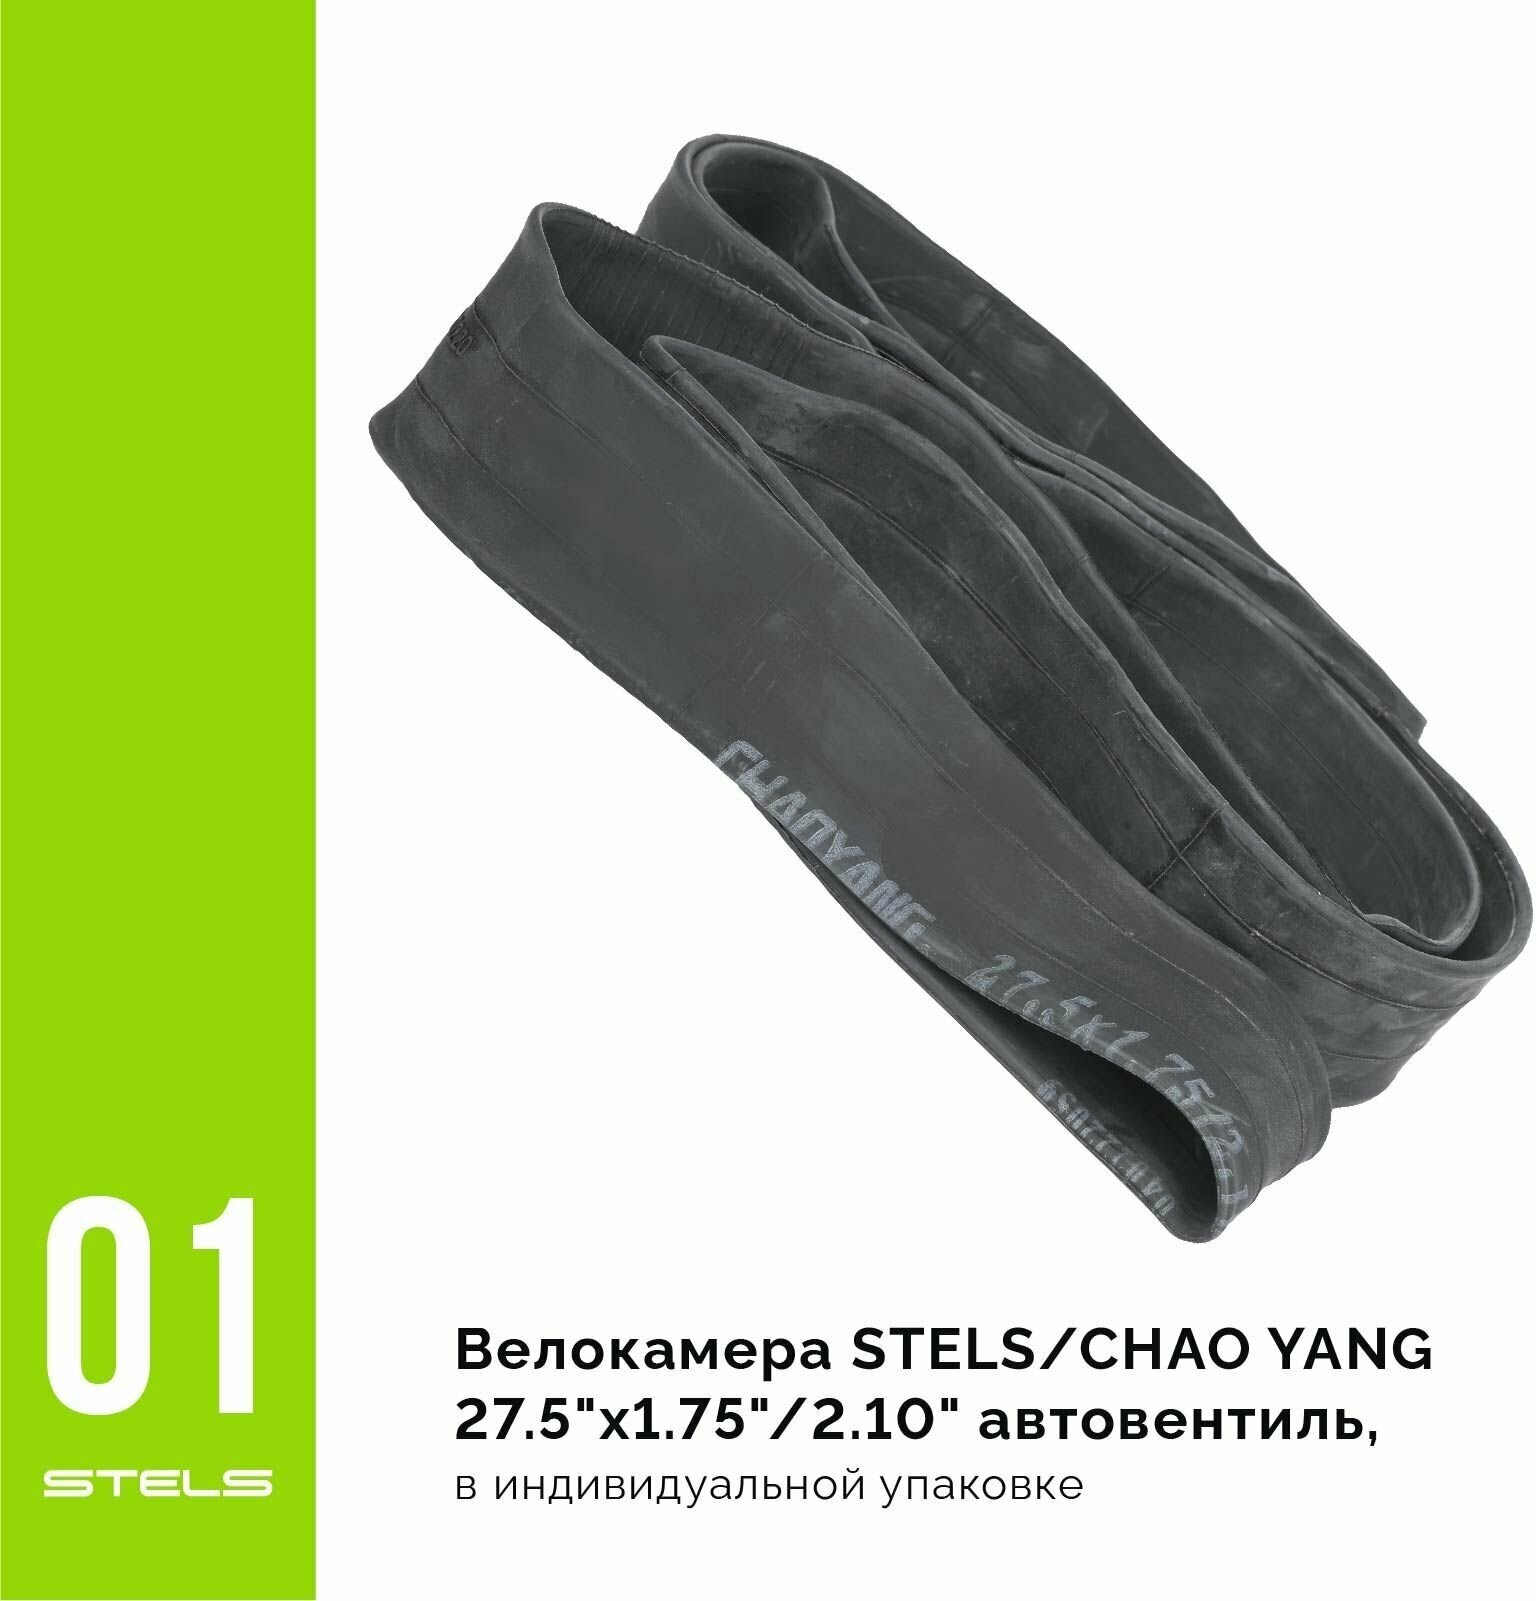 Велокамера STELS/CHAO YANG 27.5"х1.75"/2.10" автониппель, в индивидуальной упаковке